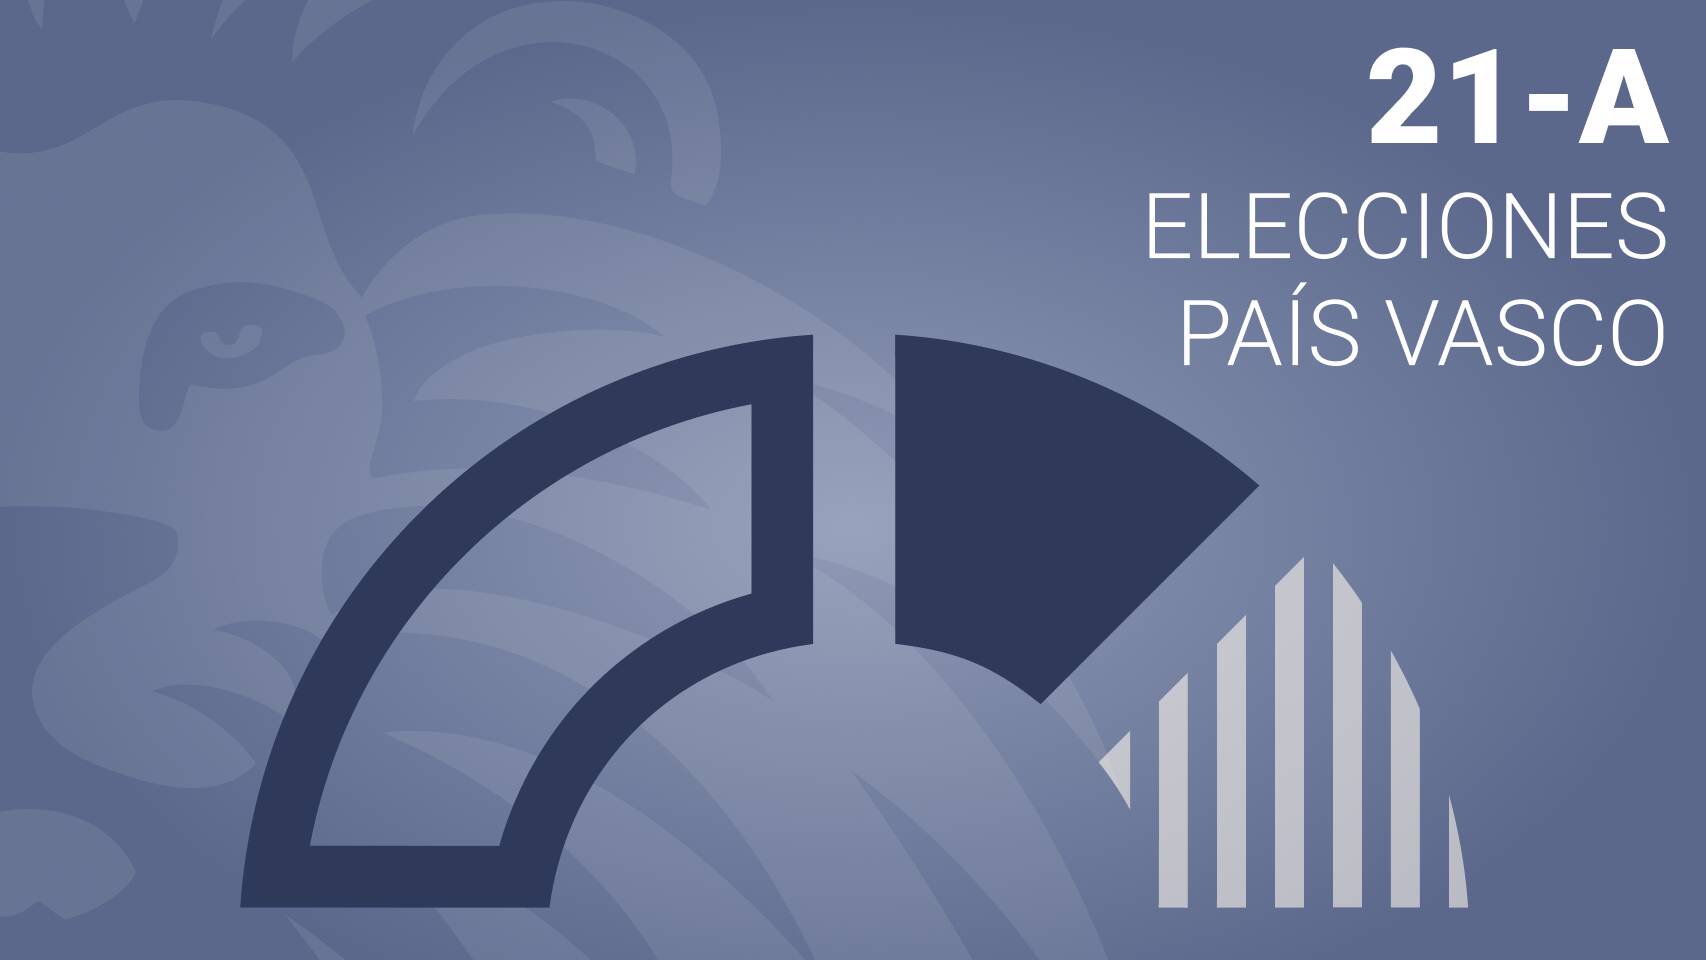 Estos son los resultados de las elecciones vascas en Arrieta - PNV gana con el 46.45% de los votos